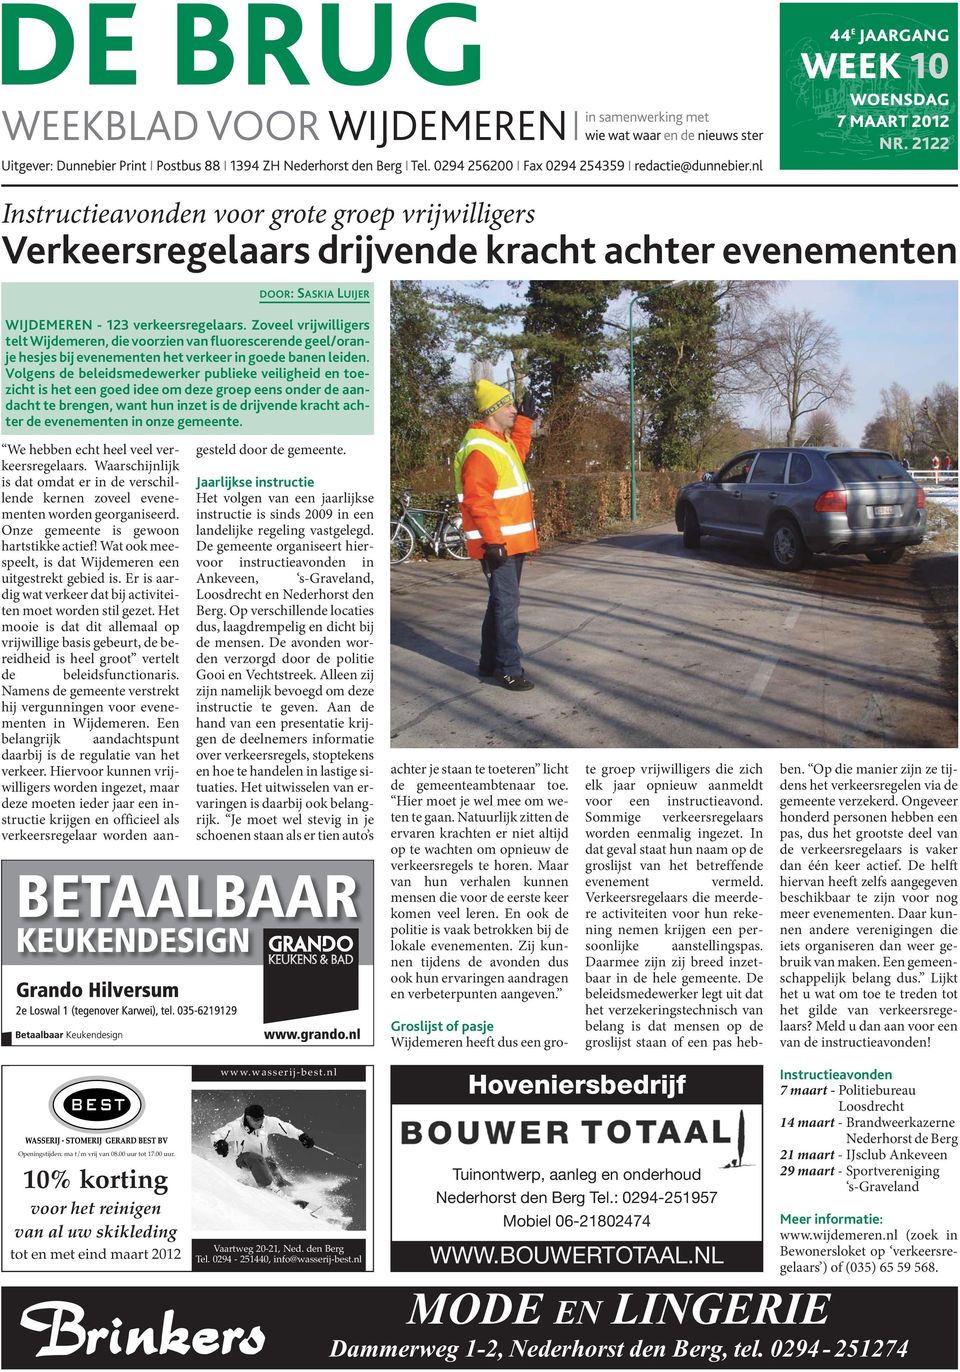 Zoveel vrijwilligers telt Wijdemeren, die voorzien van fluorescerende geel/oranje hesjes bij evenementen het verkeer in goede banen leiden.